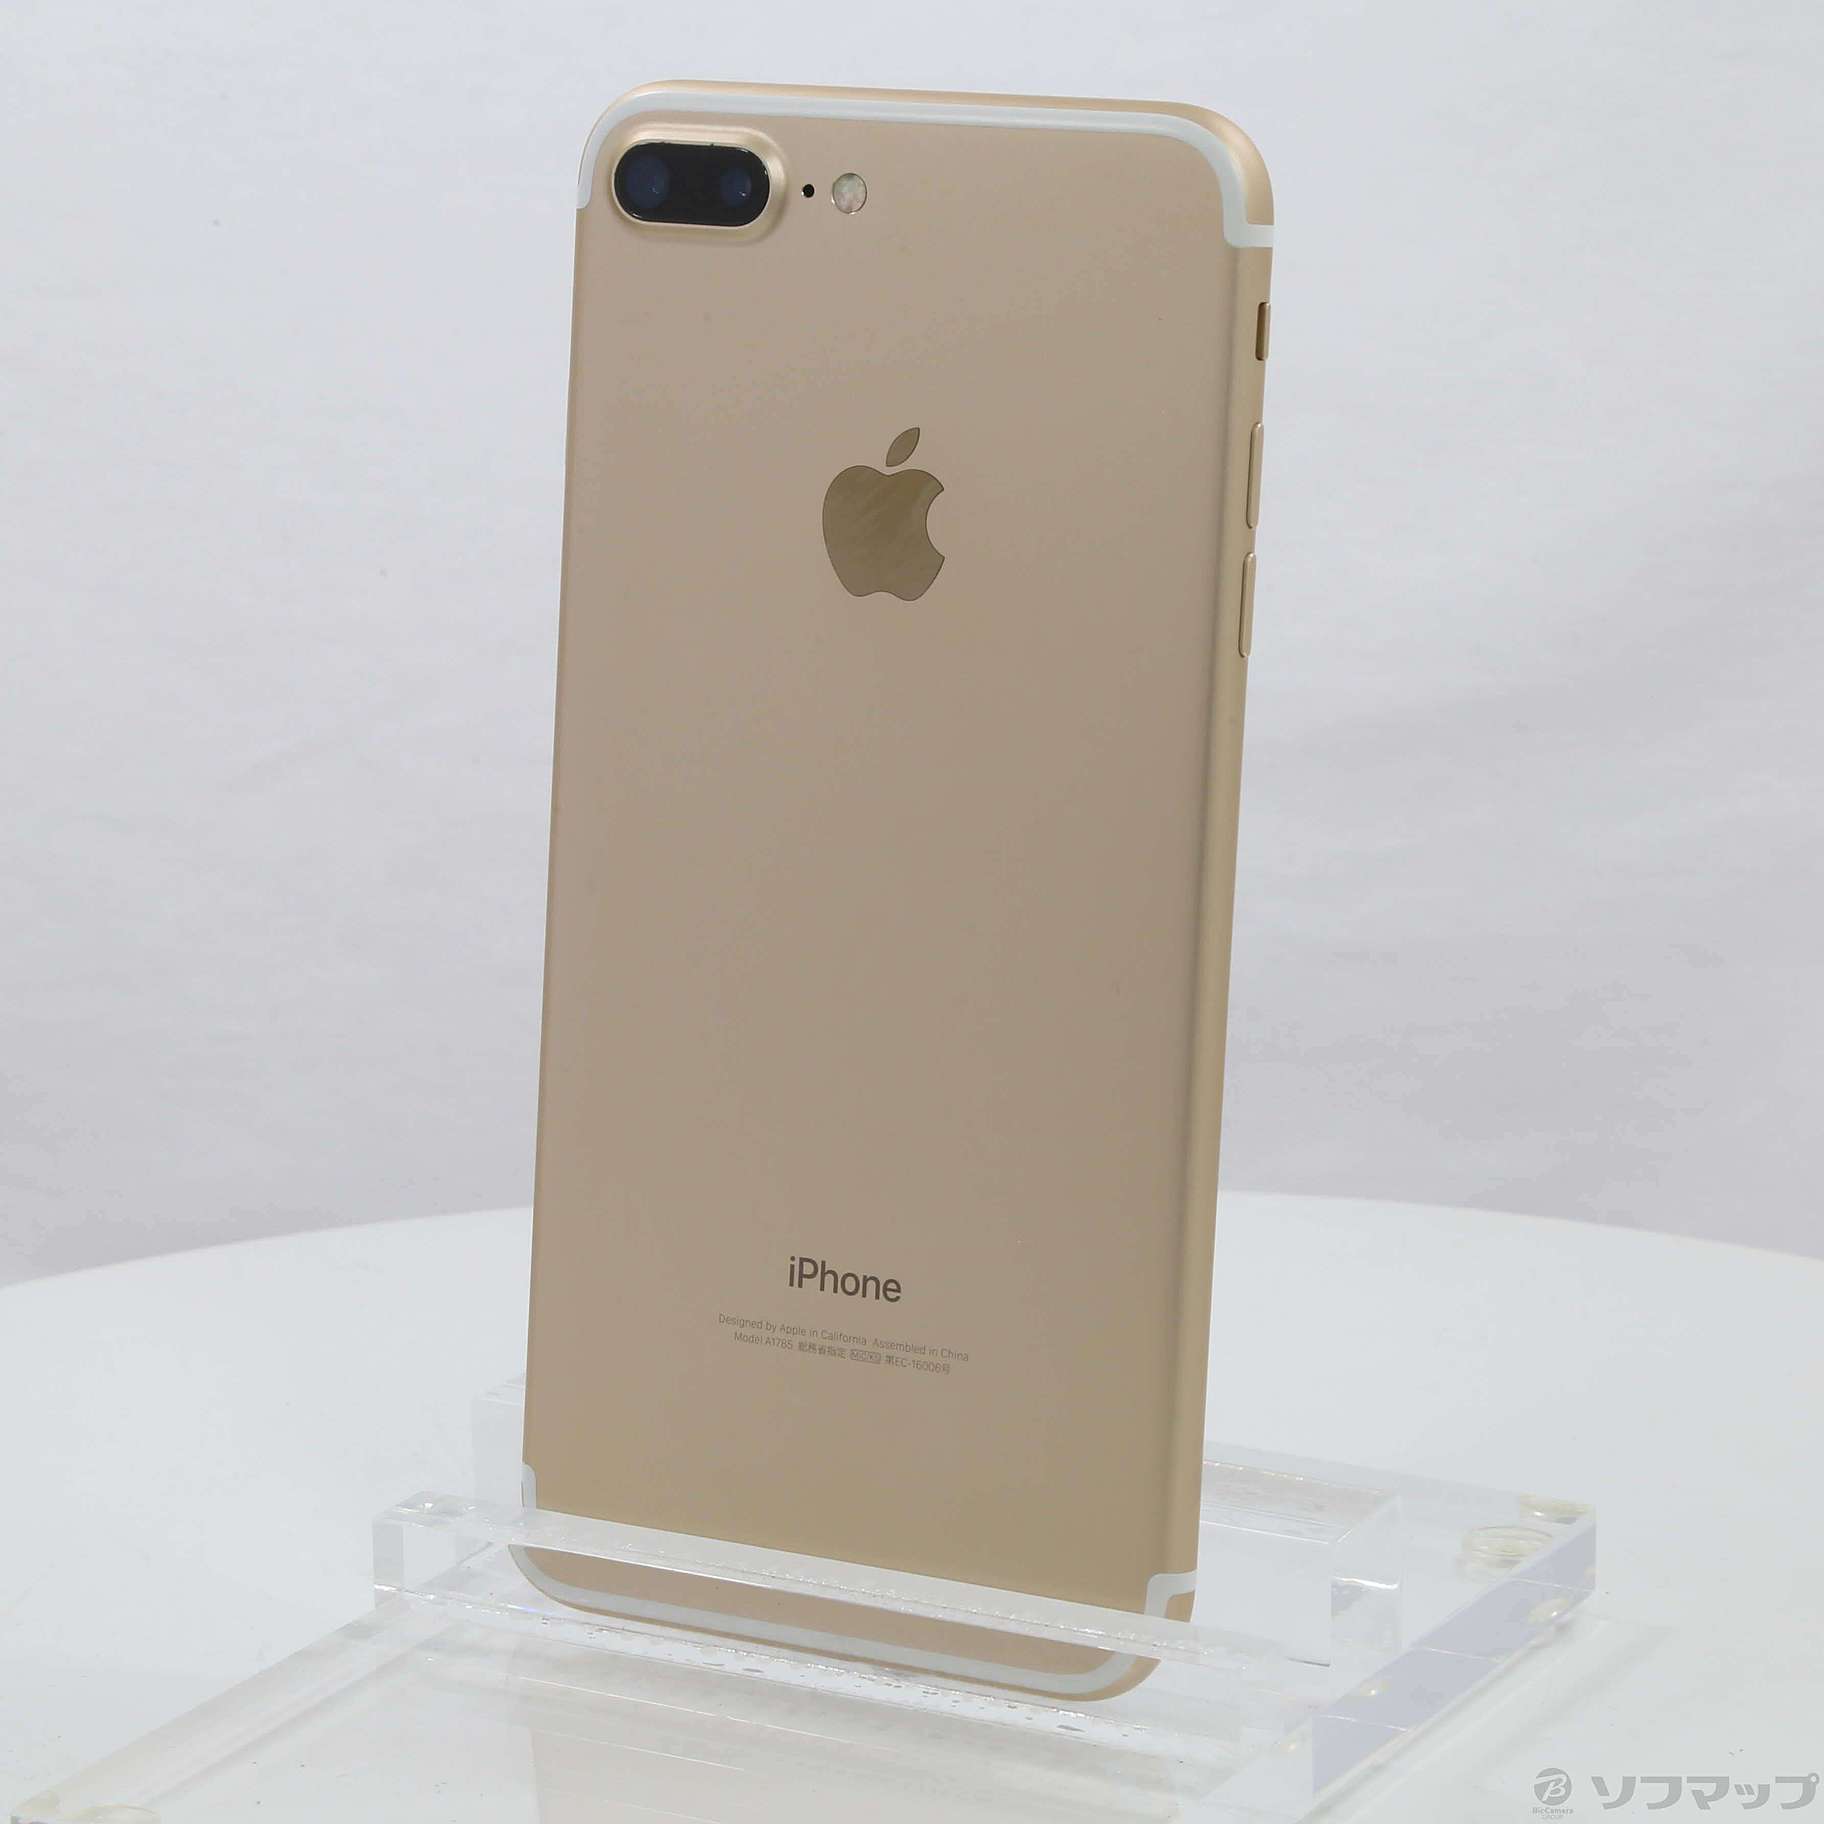 iPhone7 Plus Gold ゴールド 128GB SIMフリー - rehda.com